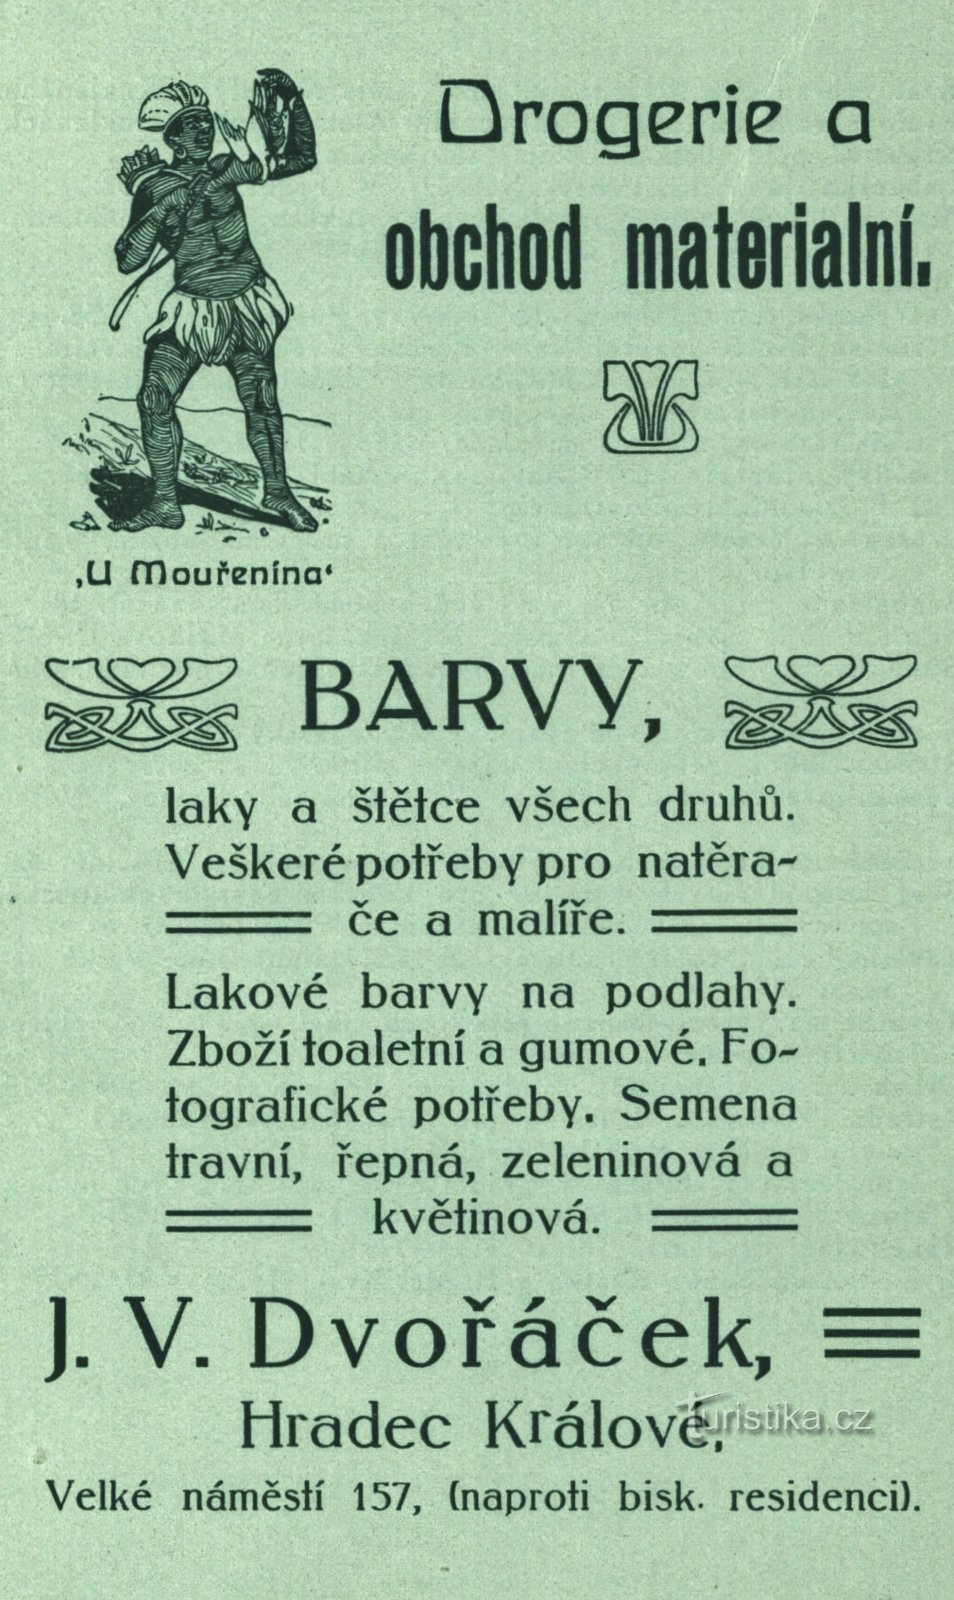 Annuncio d'epoca della farmacia di Dvořáček del 1896